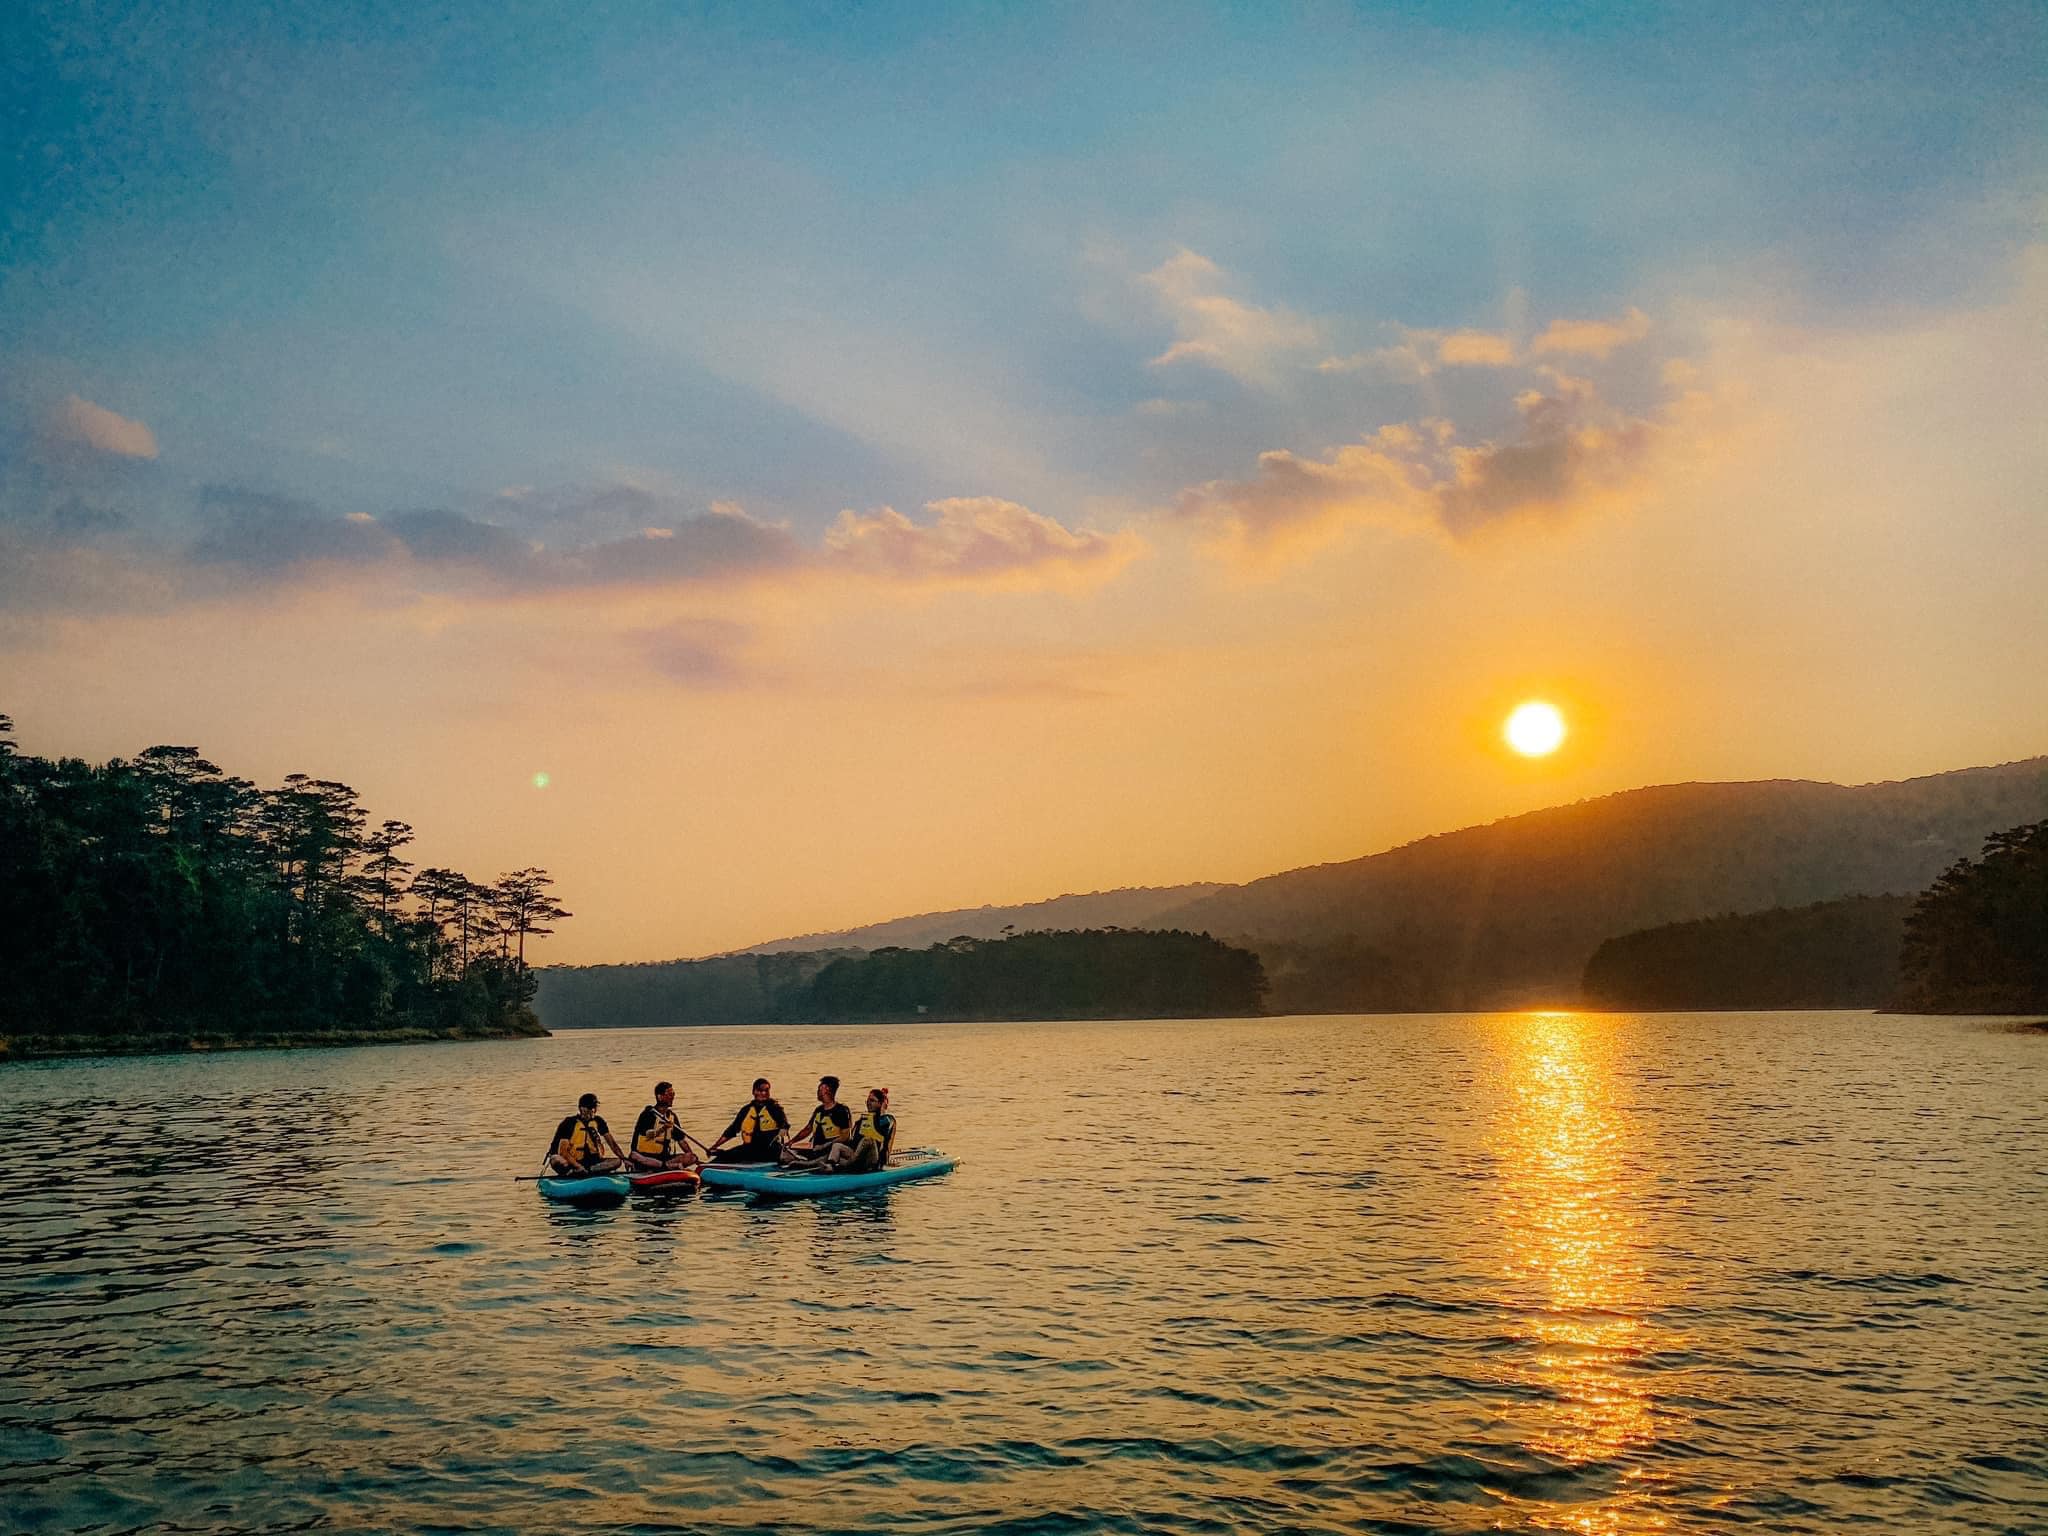 Đi thuyền vãn cảnh là trải nghiệm bạn không nên bỏ lỡ khi ghé thăm hồ Tuyền Lâm